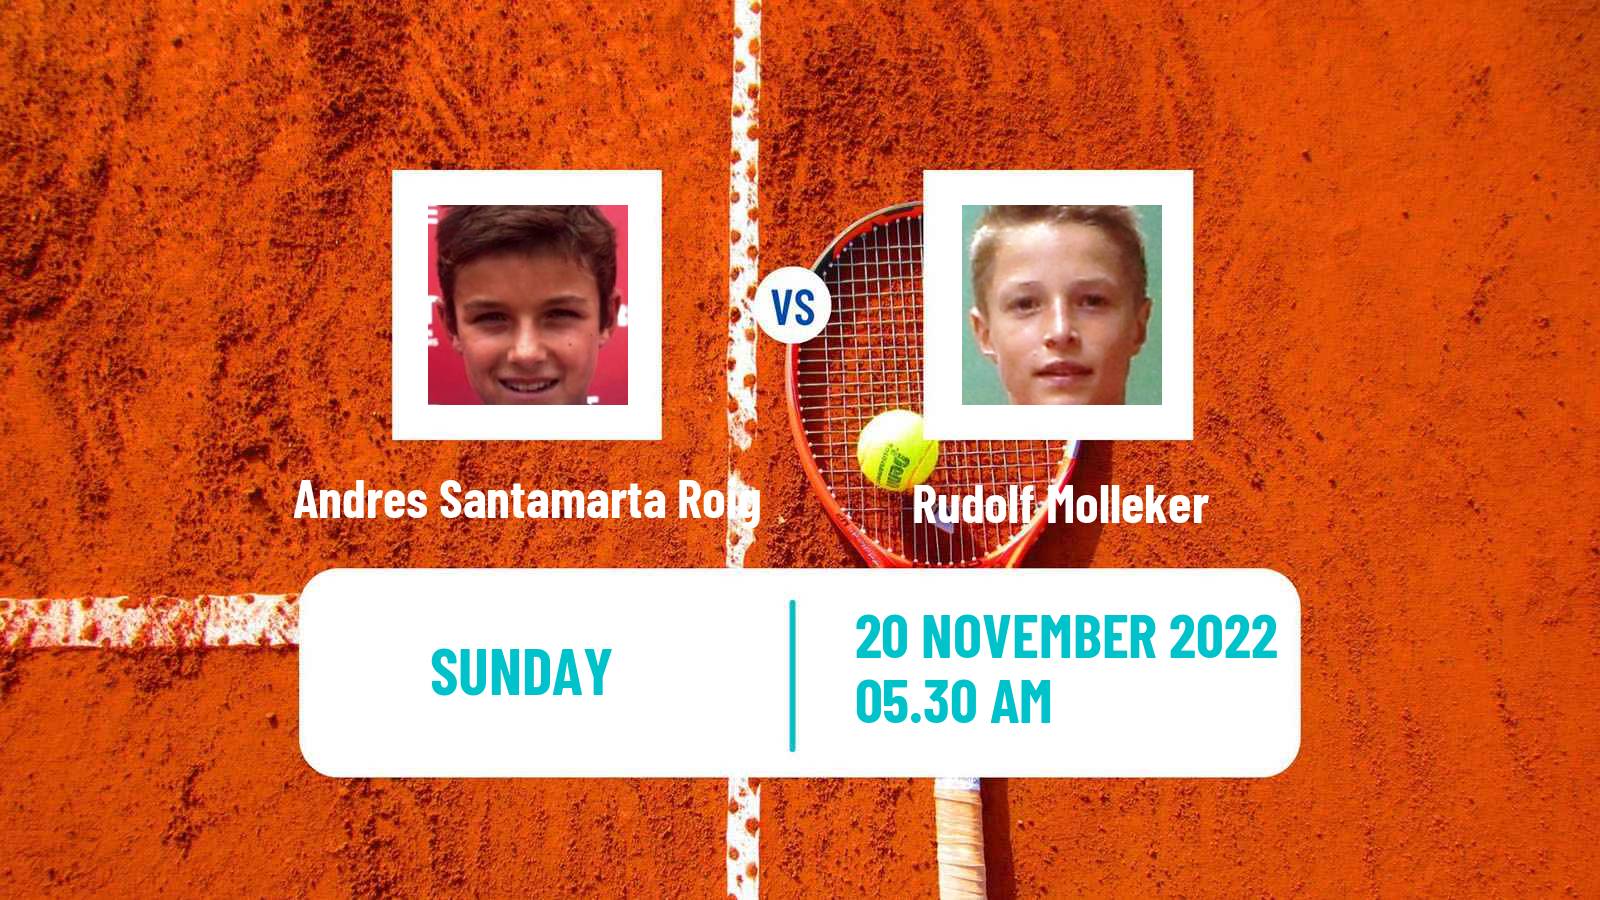 Tennis ATP Challenger Andres Santamarta Roig - Rudolf Molleker